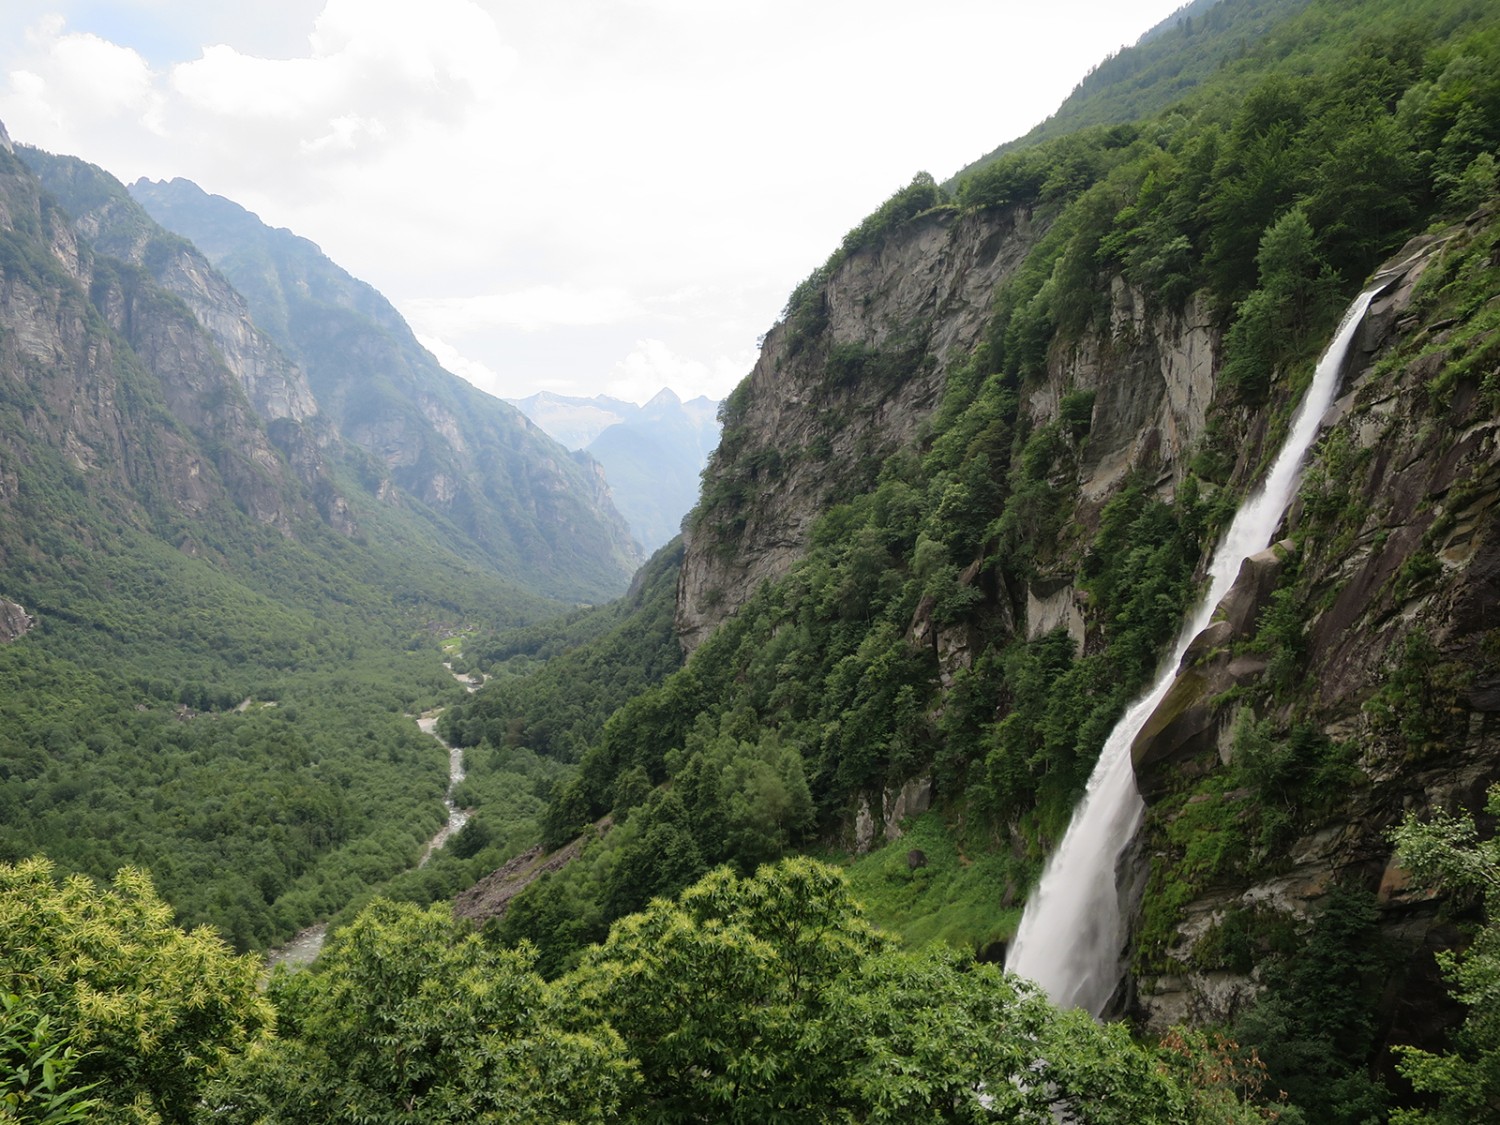 Der Wasserfall bei Foroglio und der Blick ins Val Bavona. Bilder: Andreas Staeger